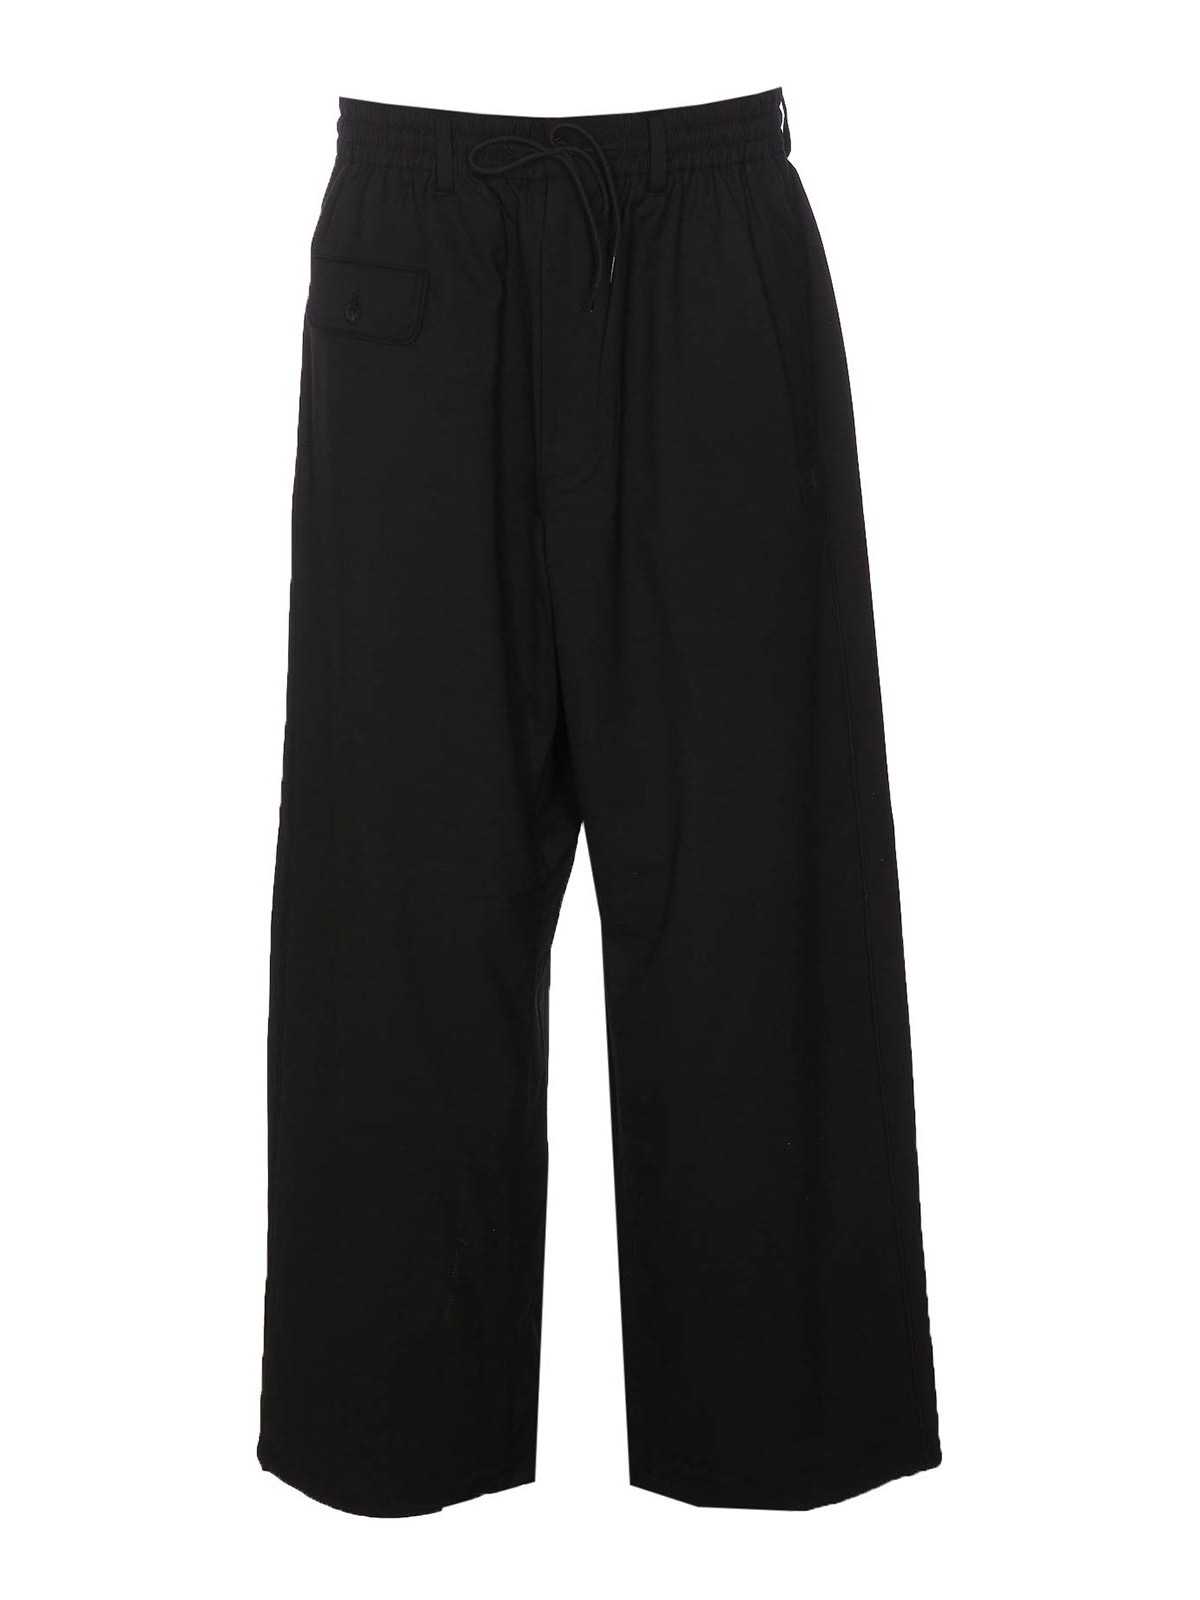 Y-3 Crinkle Nylon Pant In Black